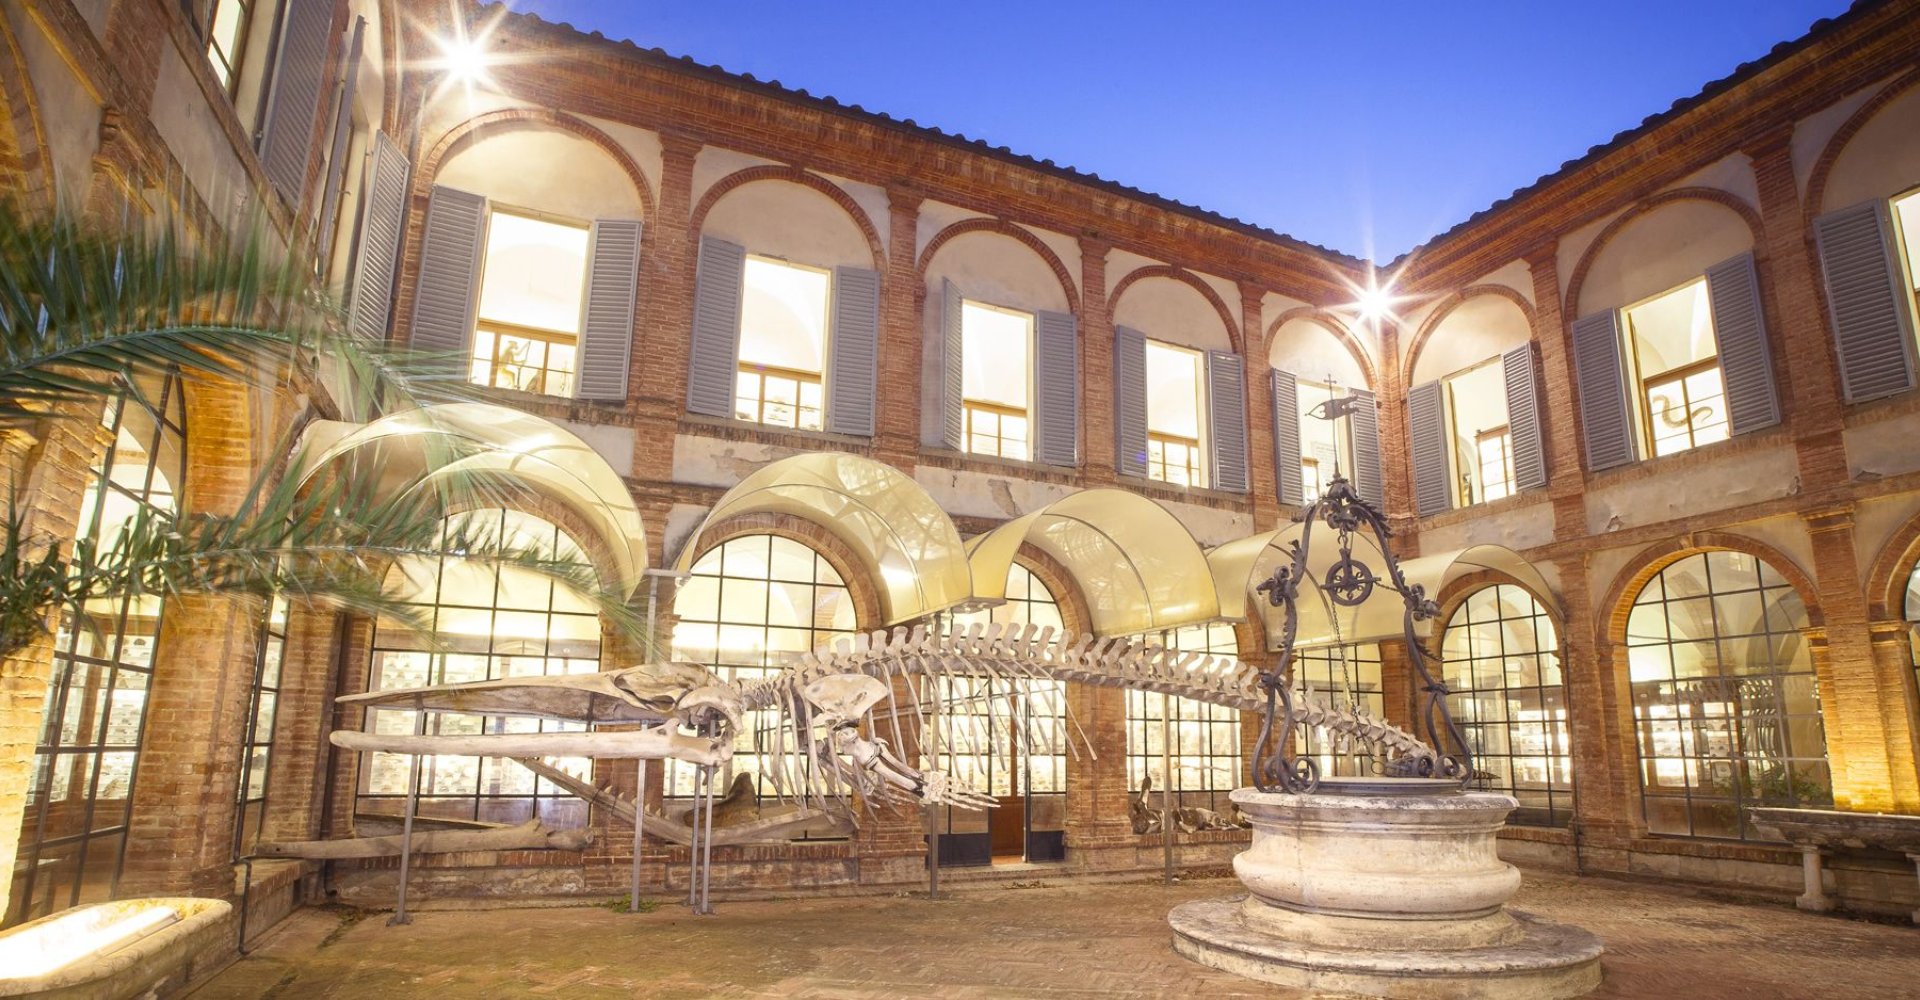 Museo de Historia Natural de la Academia de los Fisiocríticos de Siena